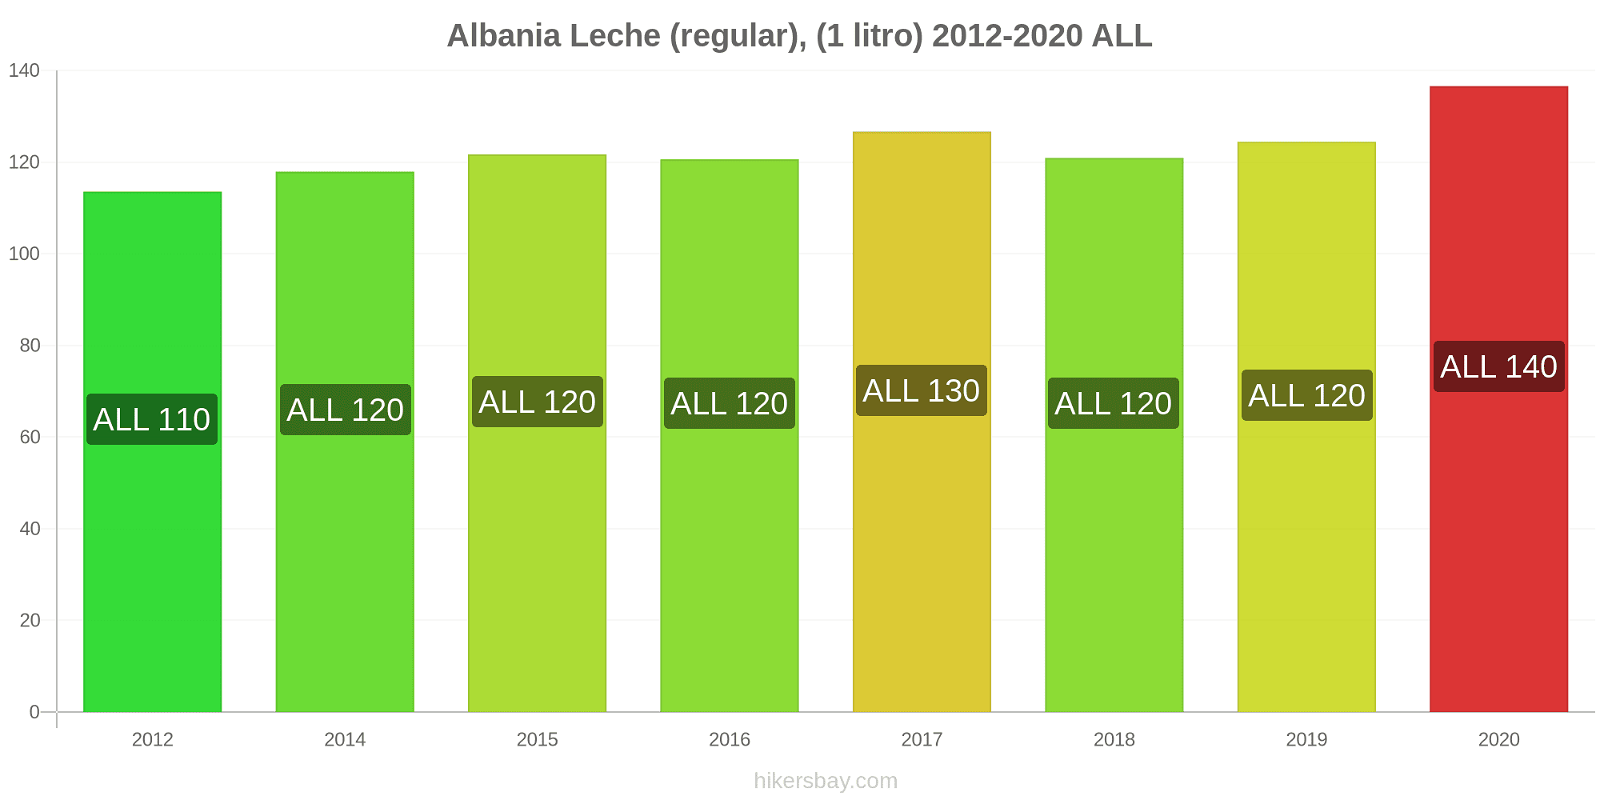 Albania cambios de precios Leche (Regular), (1 litro) hikersbay.com